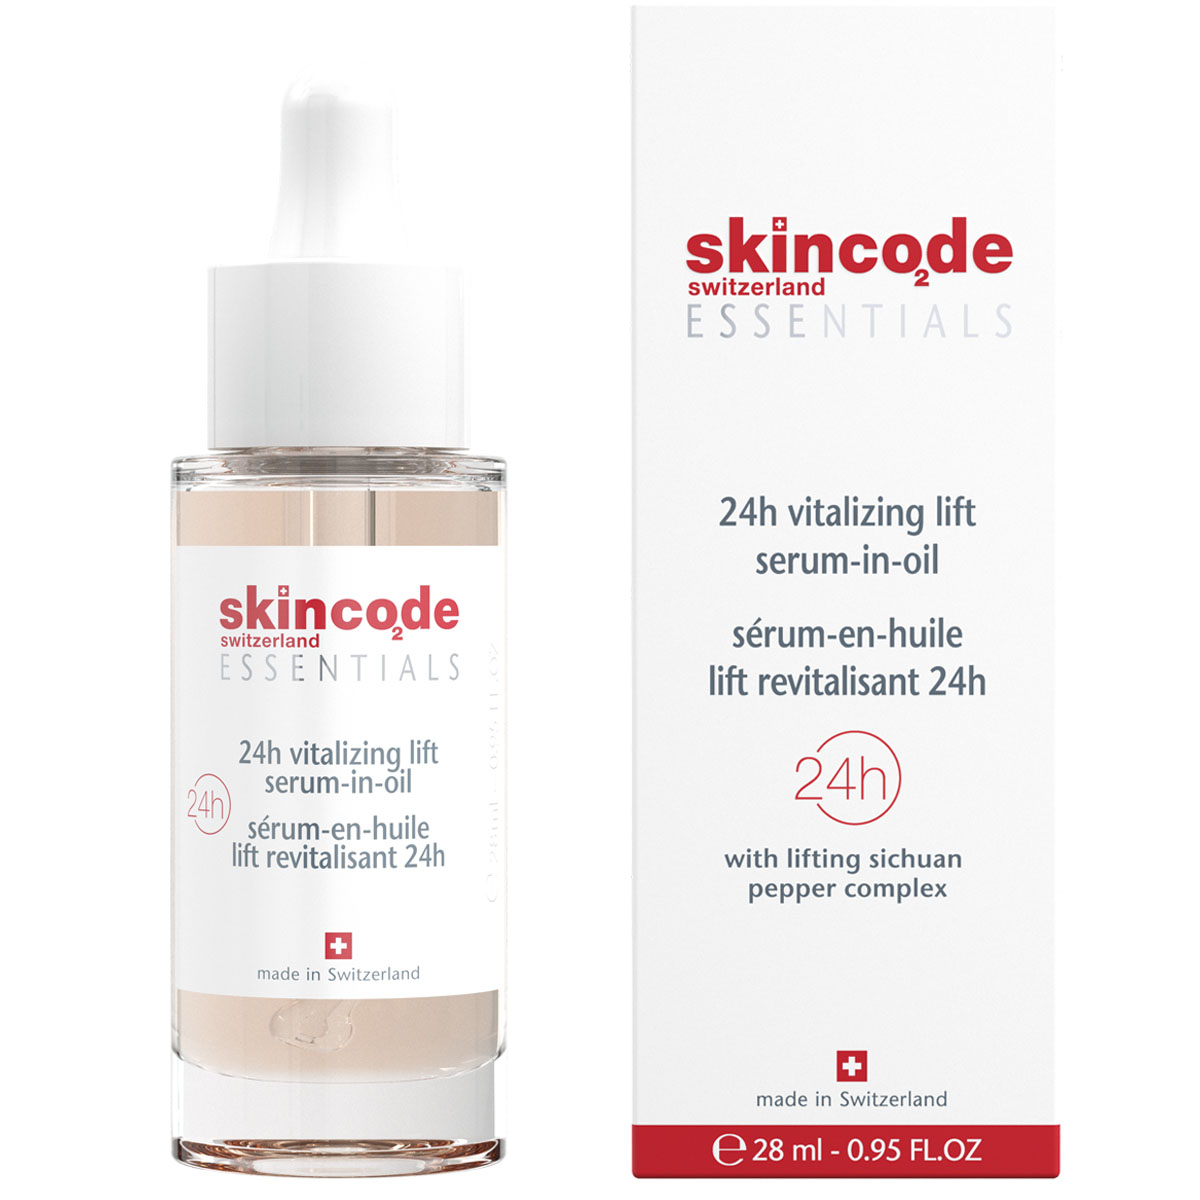 Skincode Ревитализирующая подтягивающая сыворотка в масле, 28 мл (Skincode, Essentials 24h)